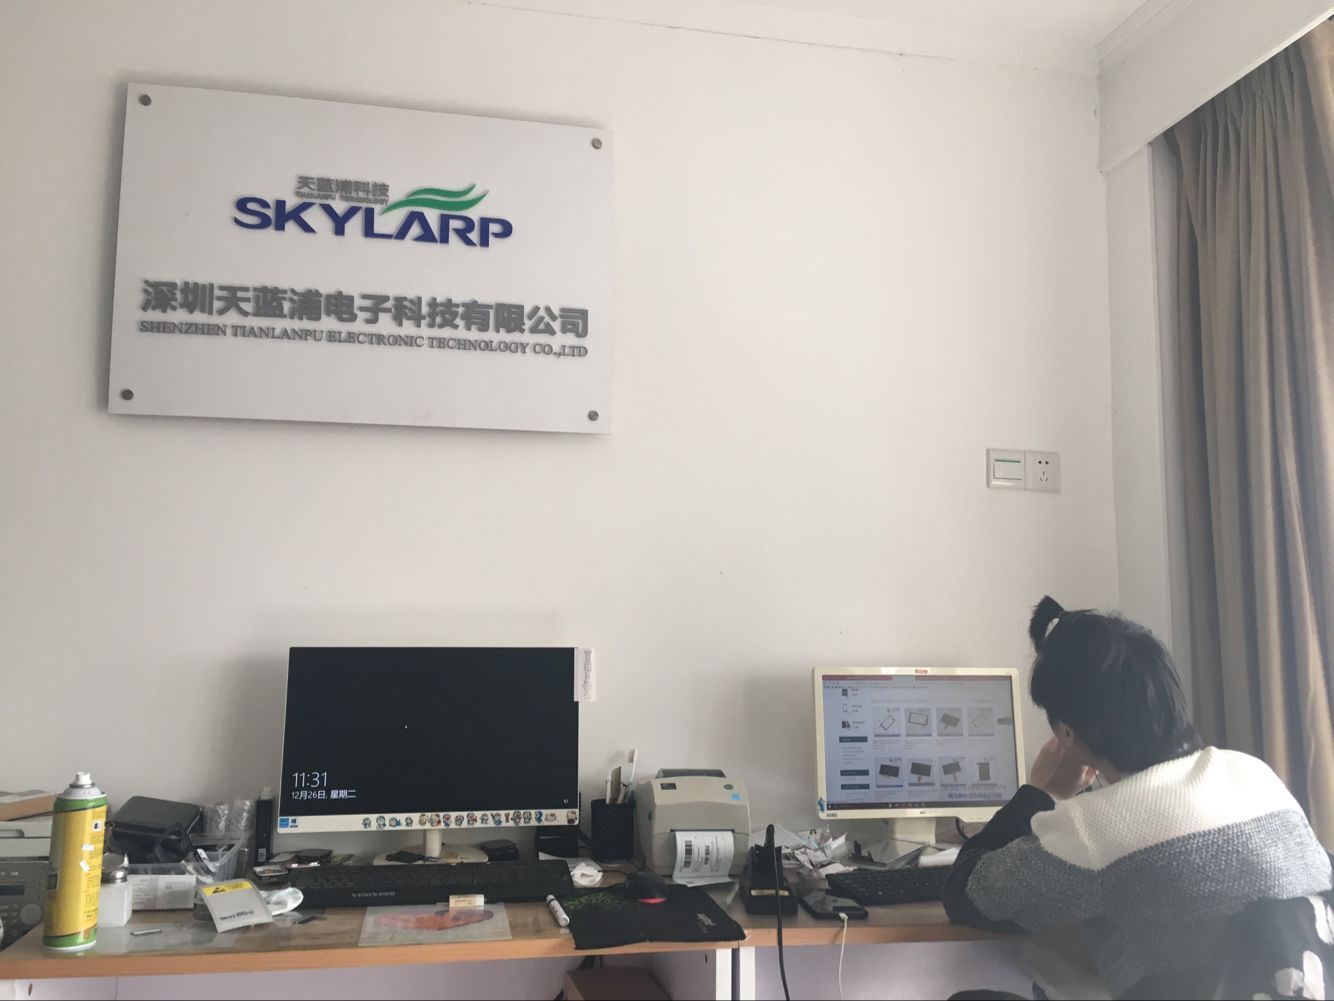 Shenzhen Skylarpu Electronic Technology Co.,Ltd